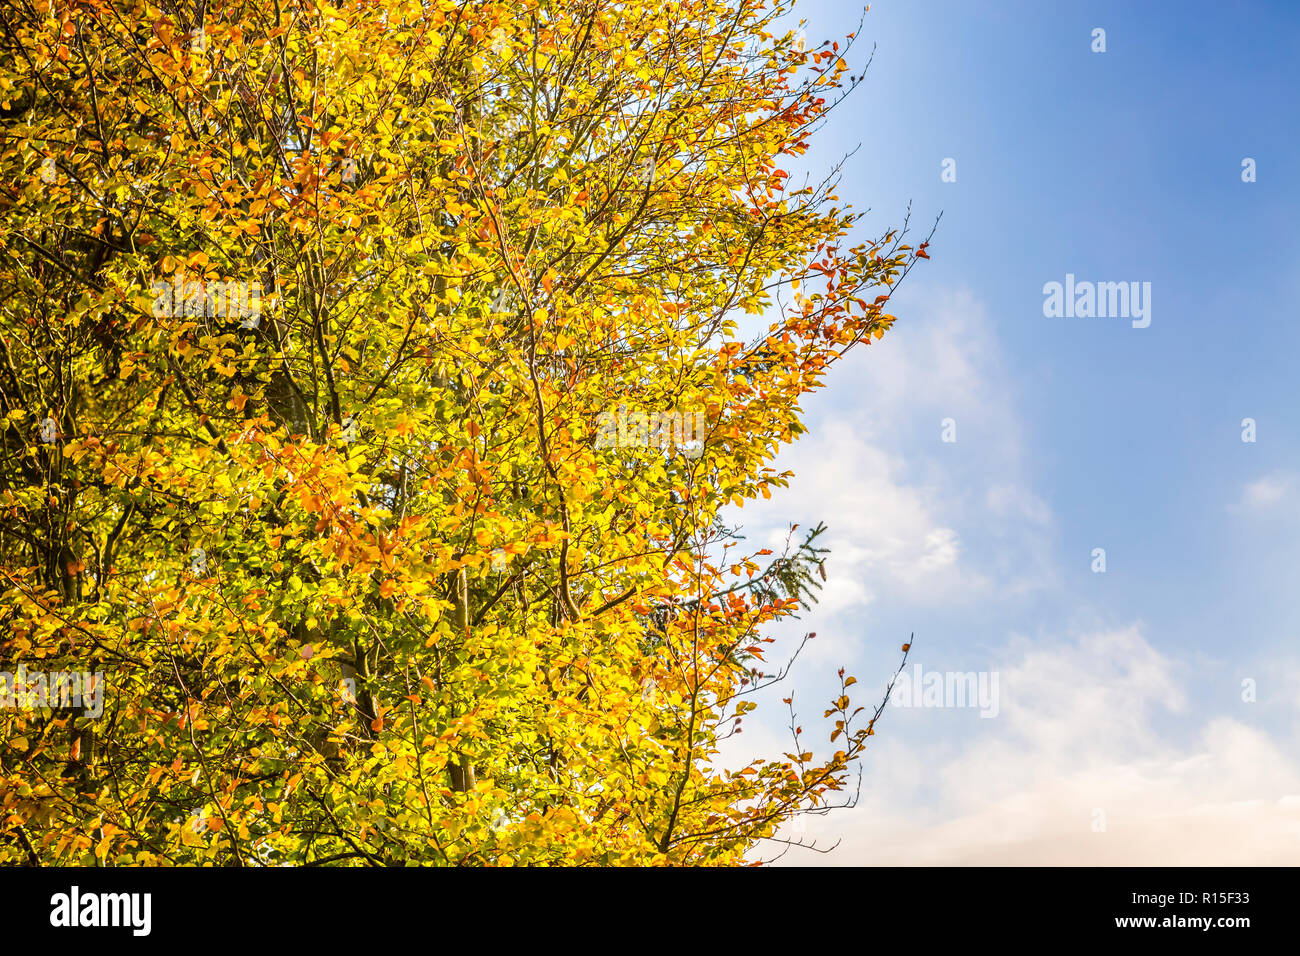 Lo zoom in vista di albero a foglie decidue in autunno colori e cielo blu, Ulmen, West Eifel campo vulcanico, Renania, Germania, Europa Foto Stock